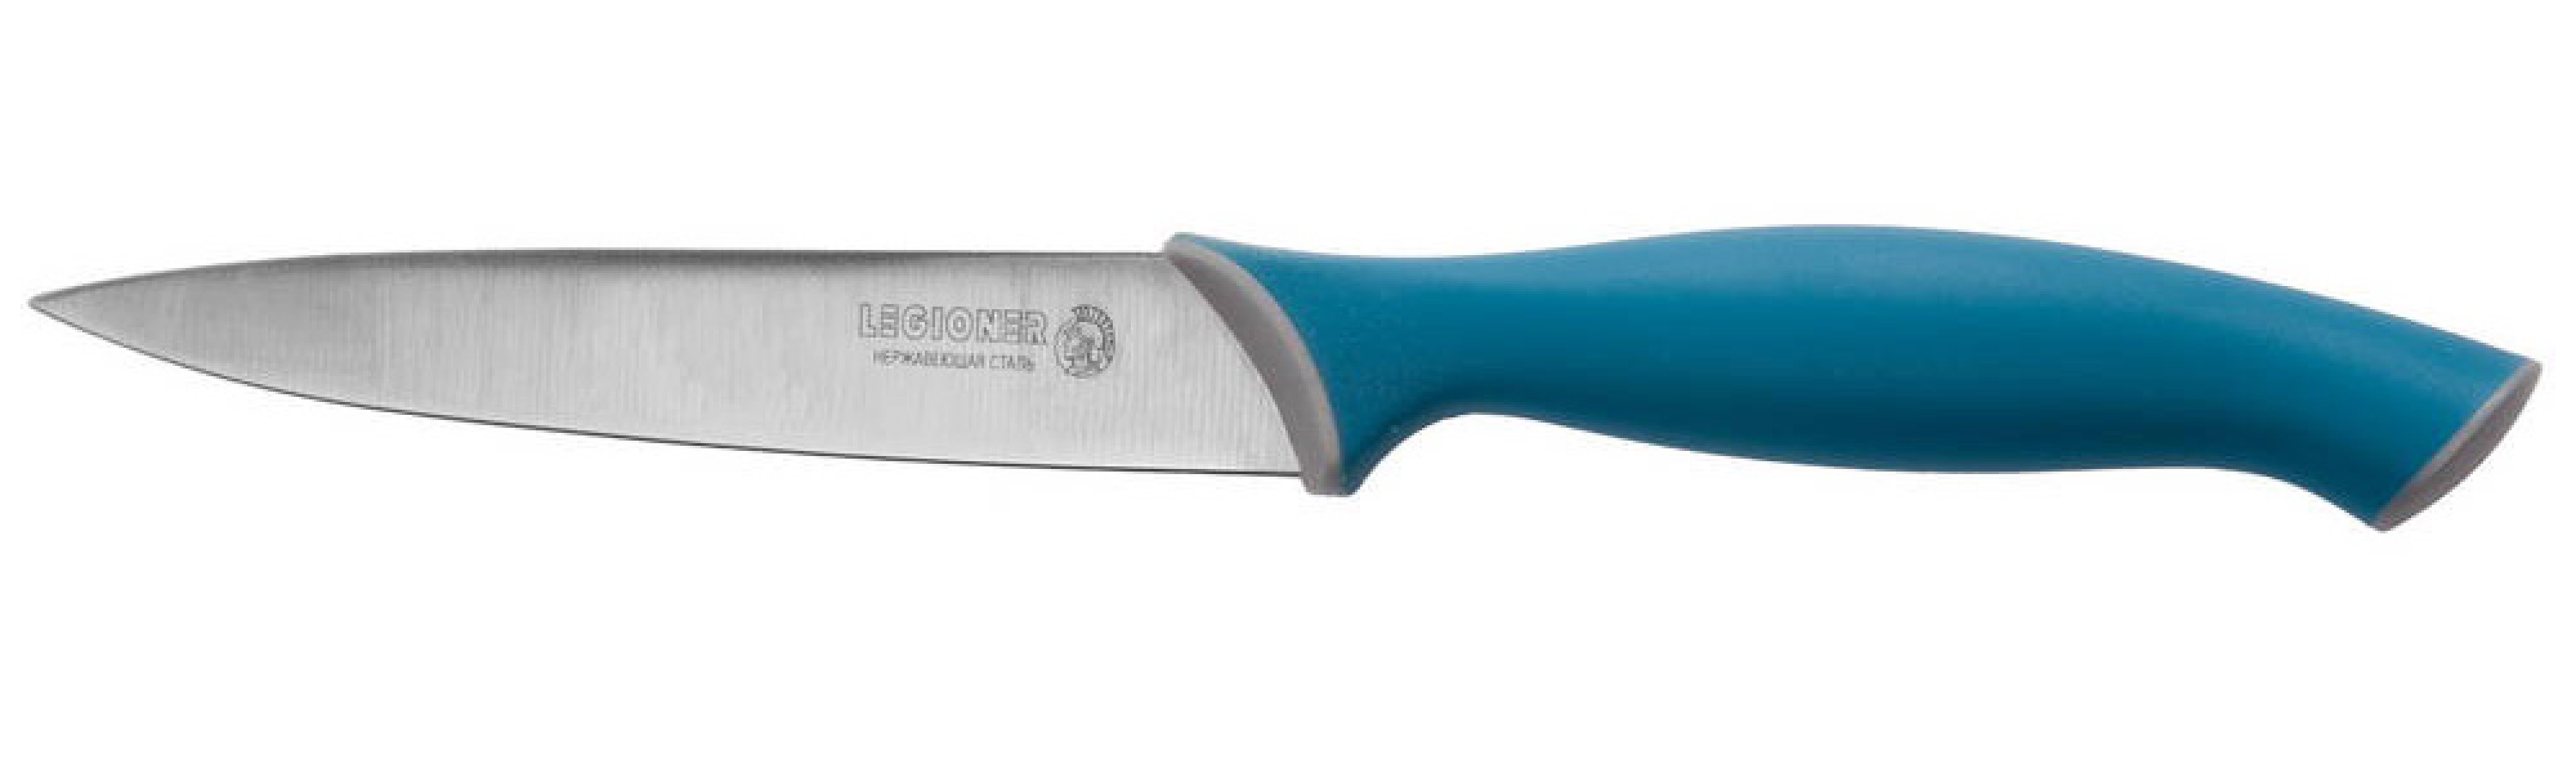 Универсальный нож LEGIONER Italica 125 мм нержавеющее лезвие эргономичная рукоятка (47964)